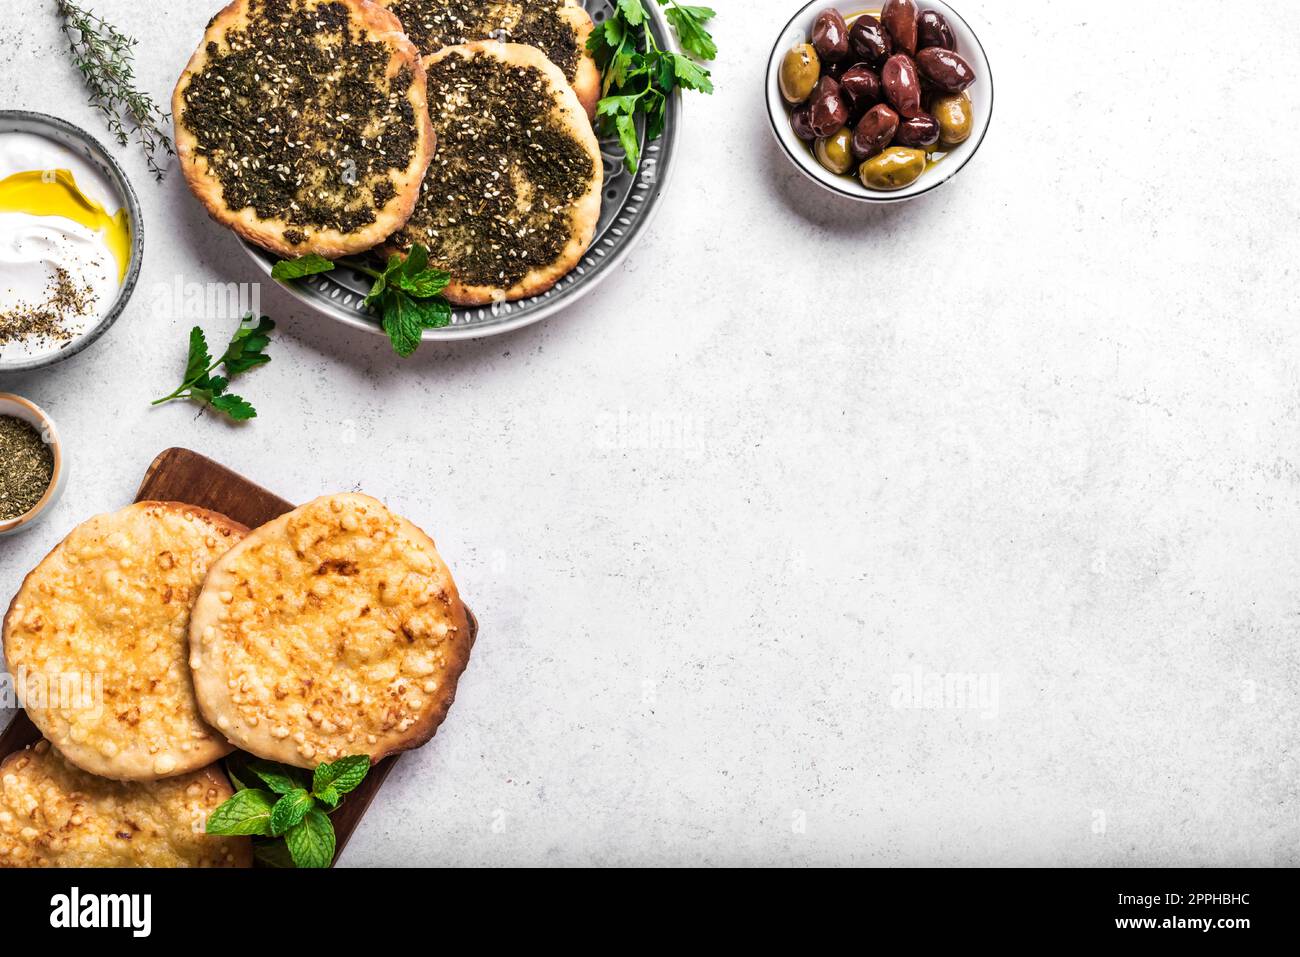 Desayuno árabe, yogur labneh, pan de manakeesh o pita con queso y zaatar en mesa blanca, espacio de copia. Comida de Oriente Medio, cocina árabe. Foto de stock